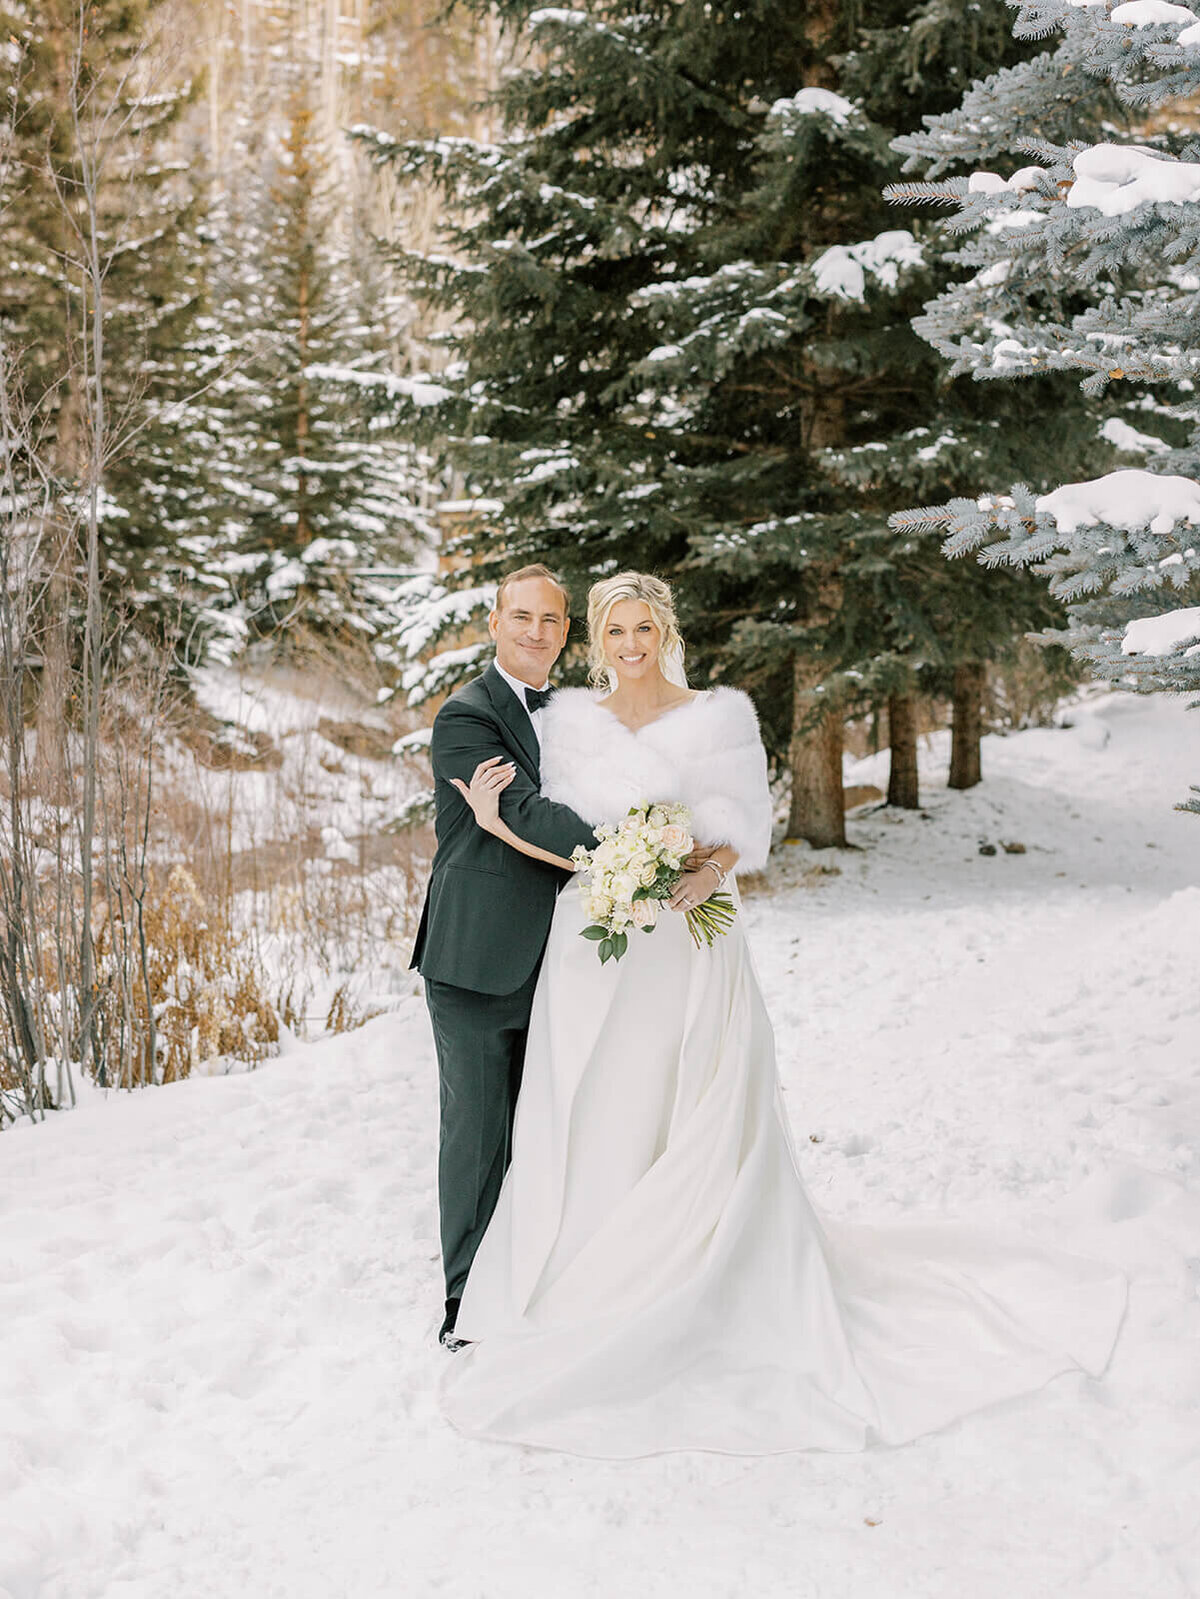 Winter wedding portrait in Vail, Colorado